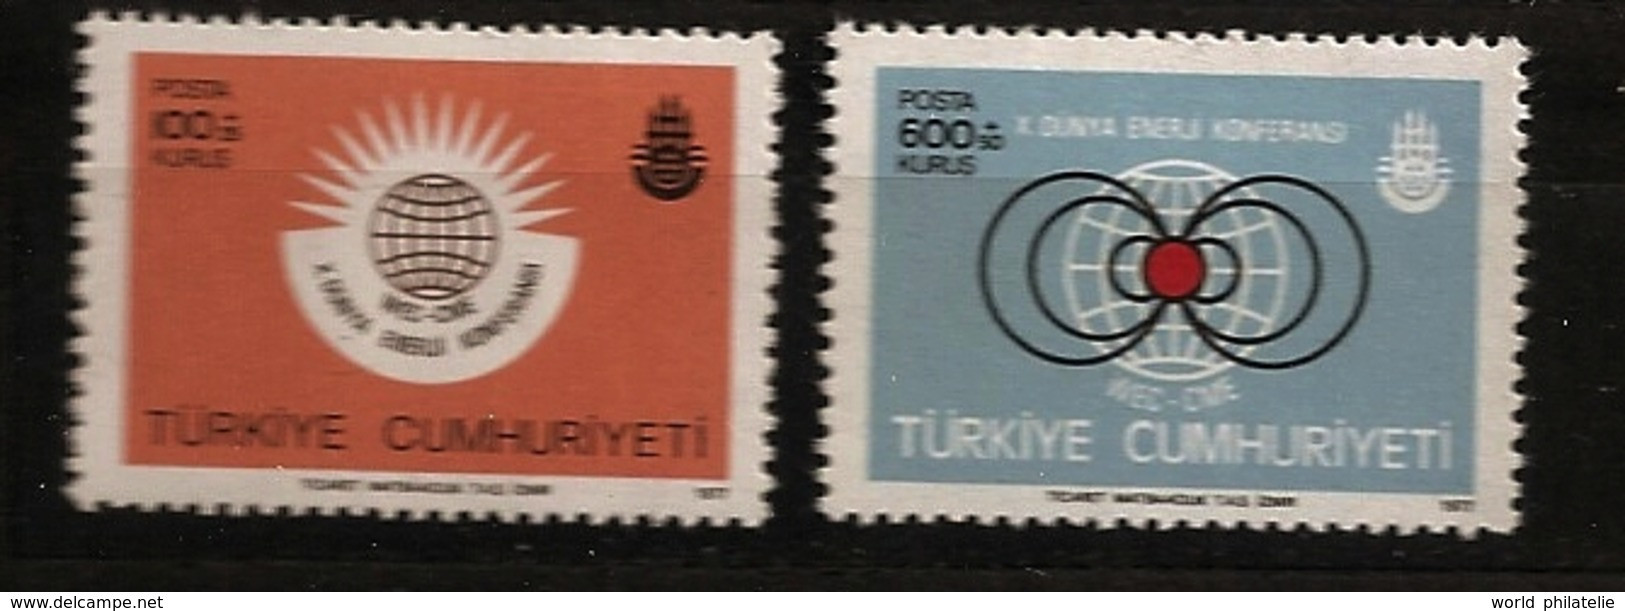 Turquie Türkiye 1977 N° 2198 / 9 ** Energie, Conférence Mondiale, Atome, Nucléaire, Gaz, Pétrole, Charbon, Electricité - Nuevos